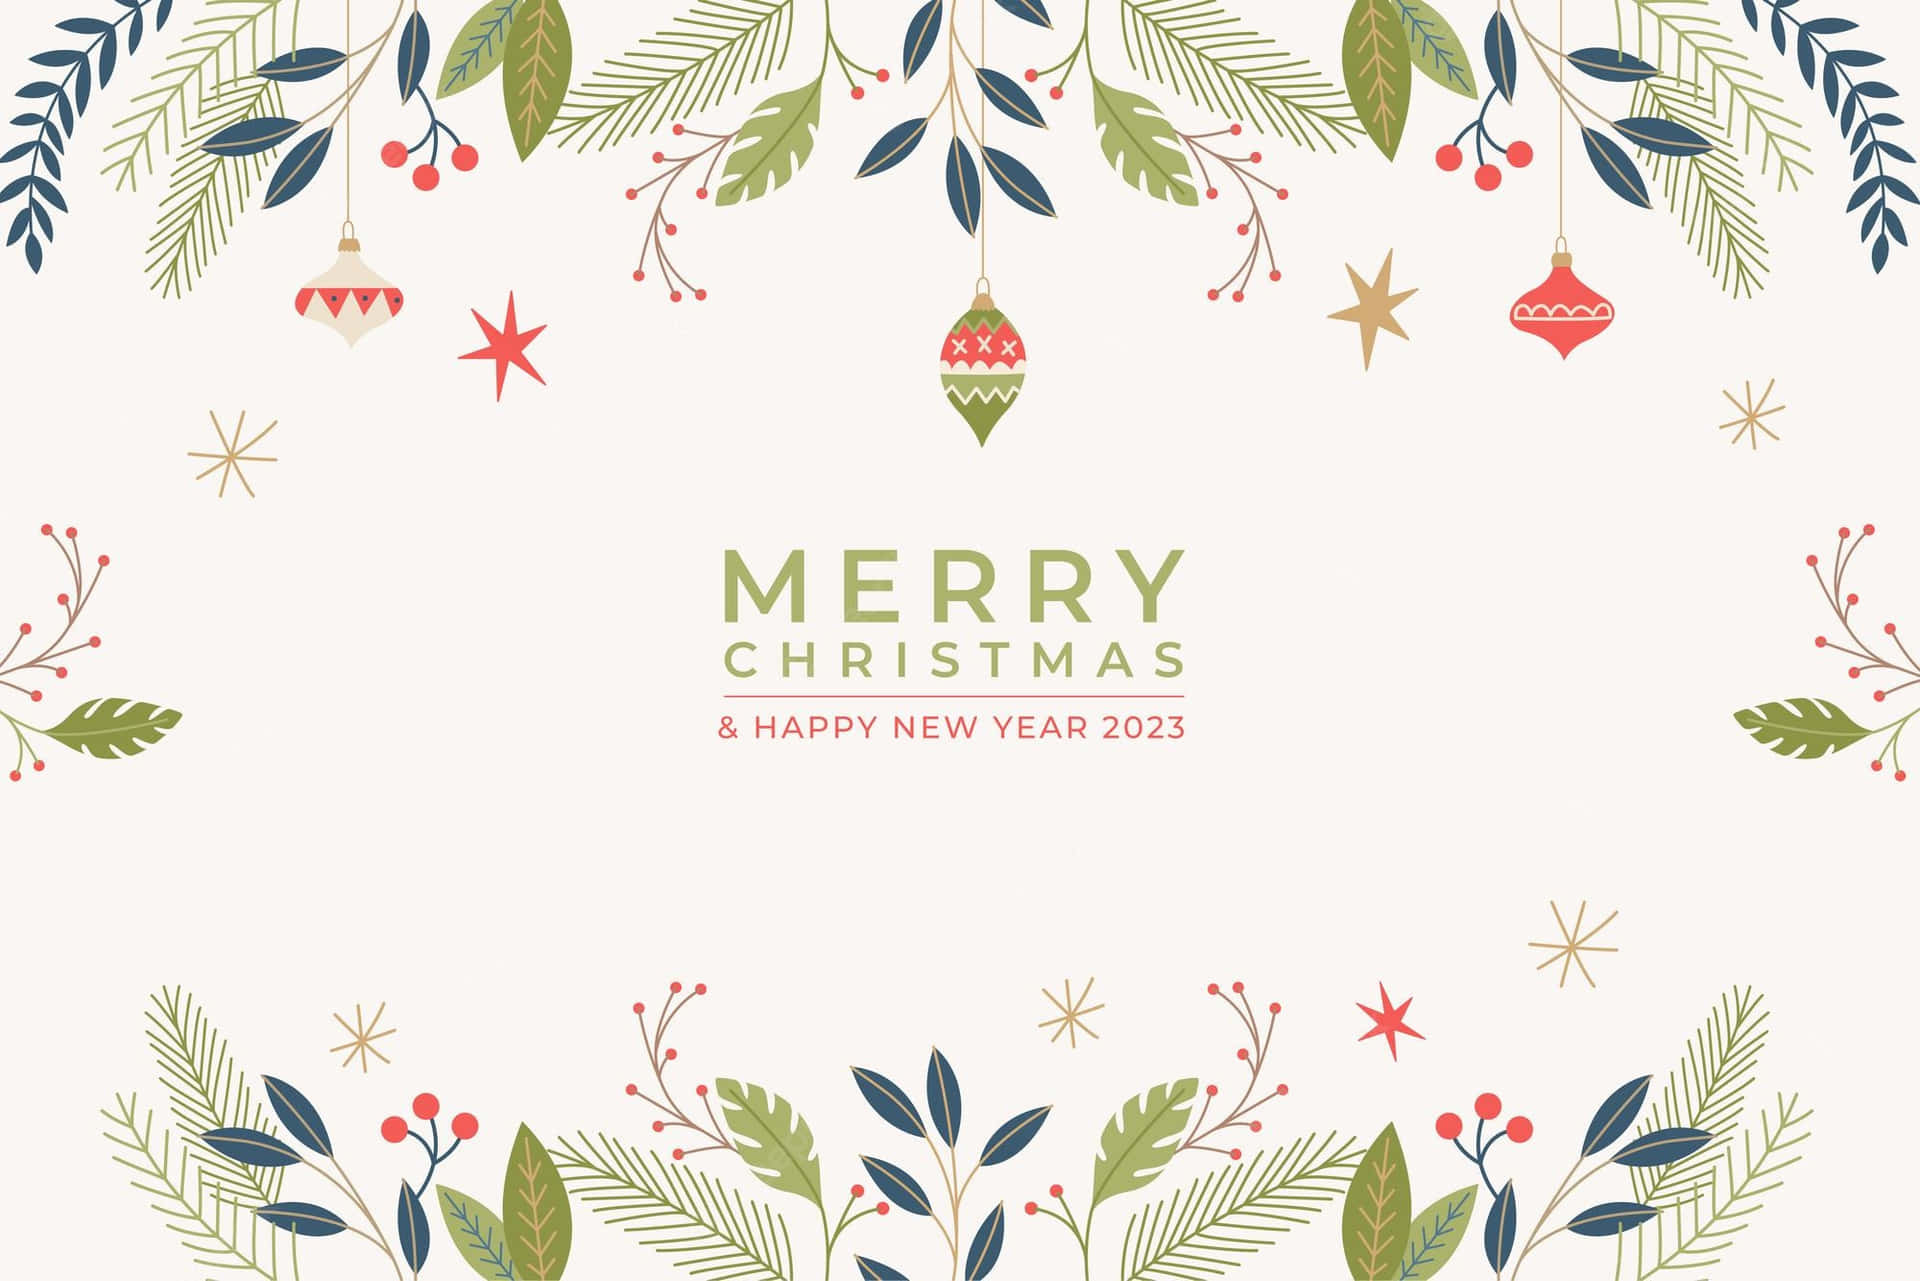 Inviai Tuoi Migliori Auguri In Occasione Delle Festività Con Una Speciale Cartolina Di Natale.